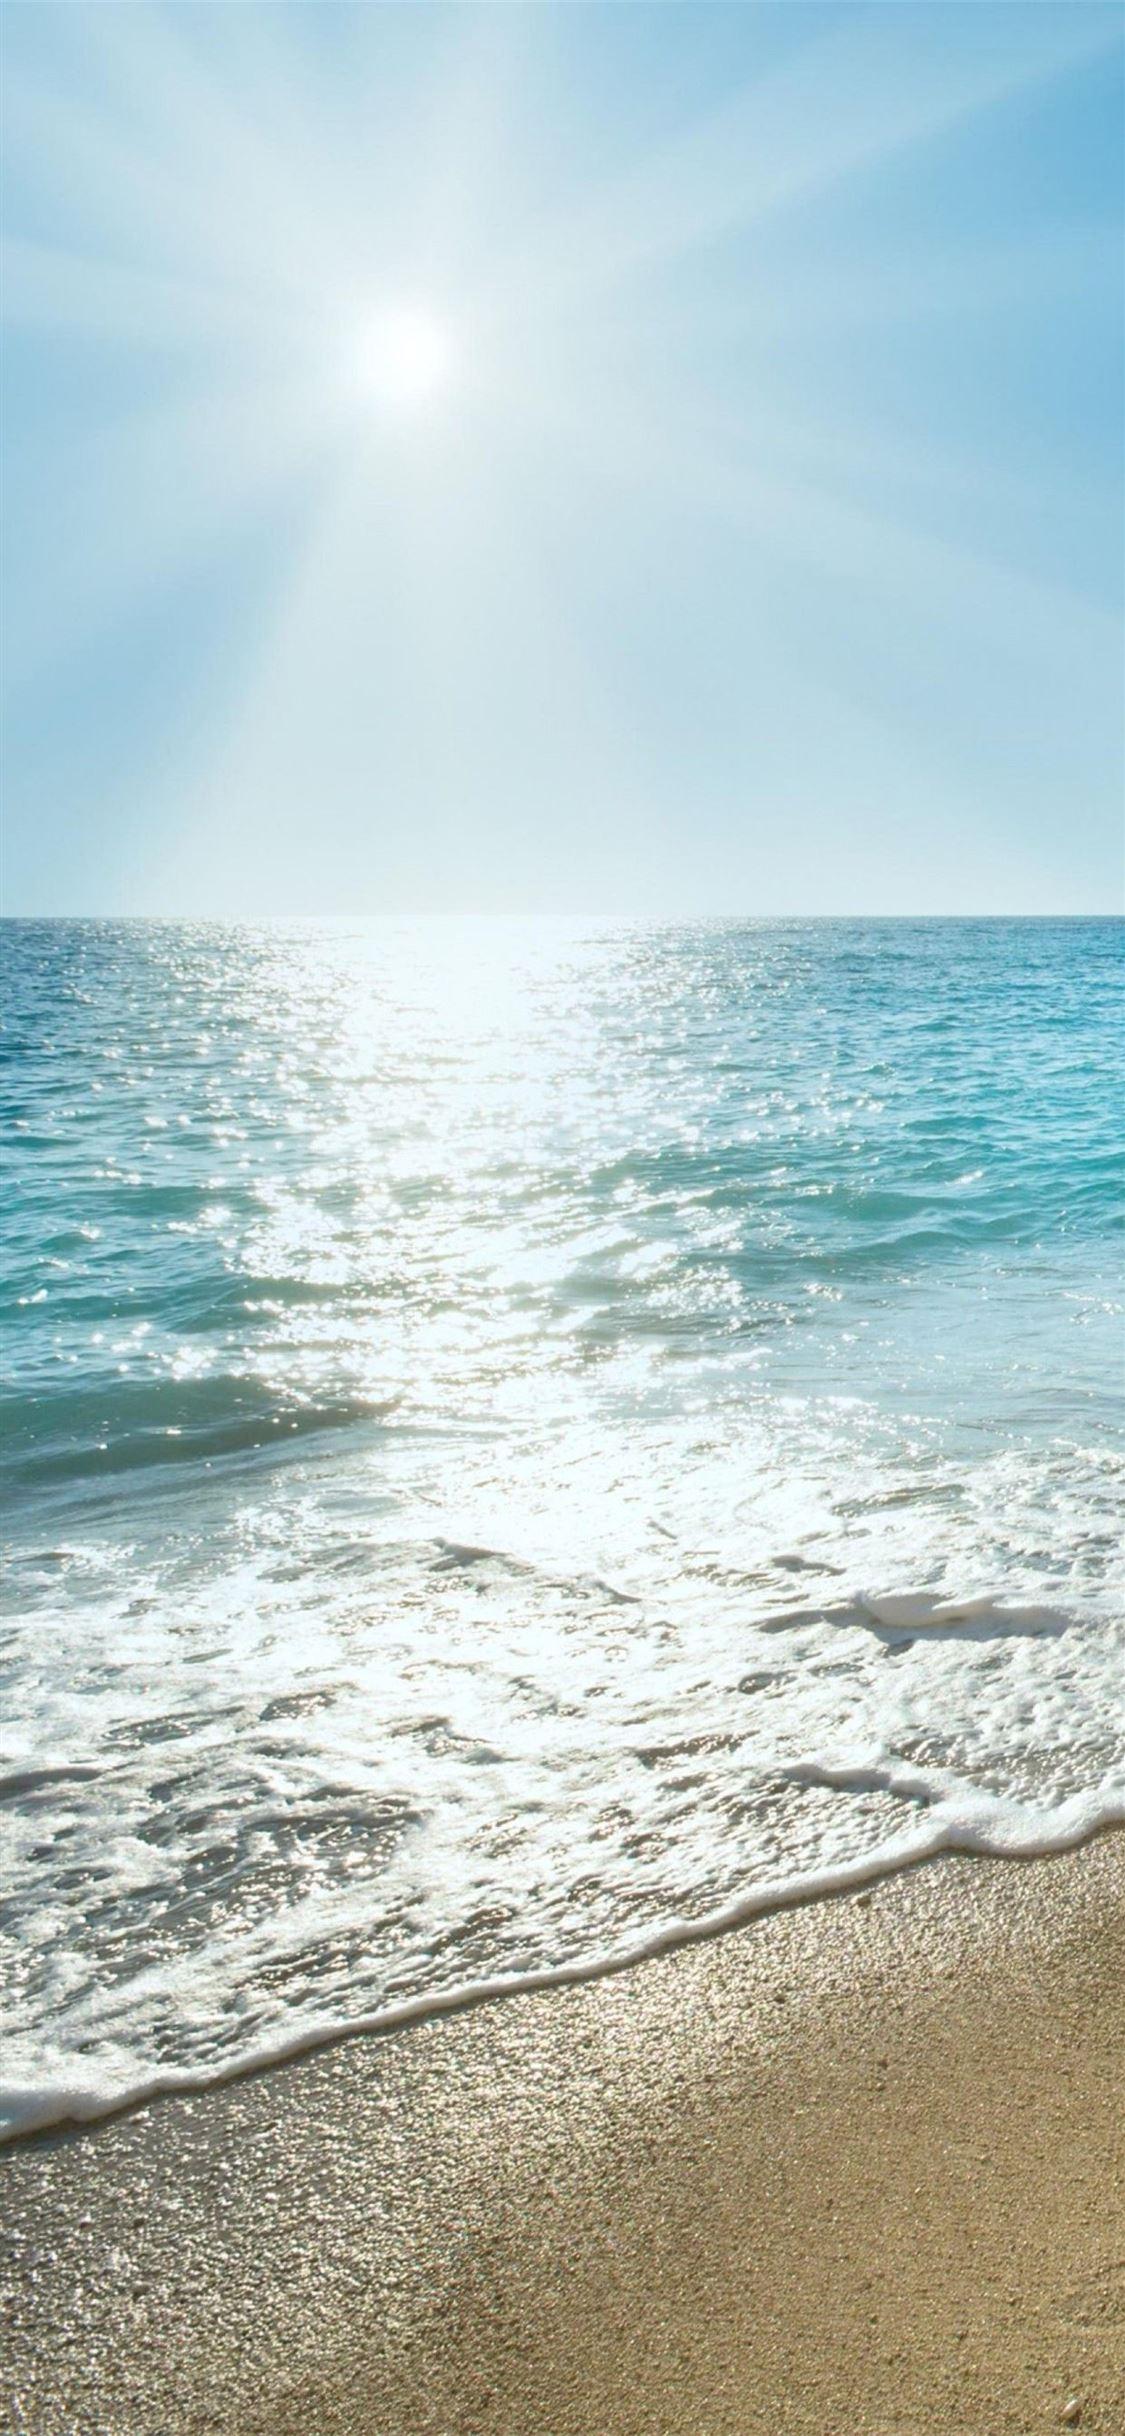 Summer Ocean Wallpapers - Top Free Summer Ocean Backgrounds ...